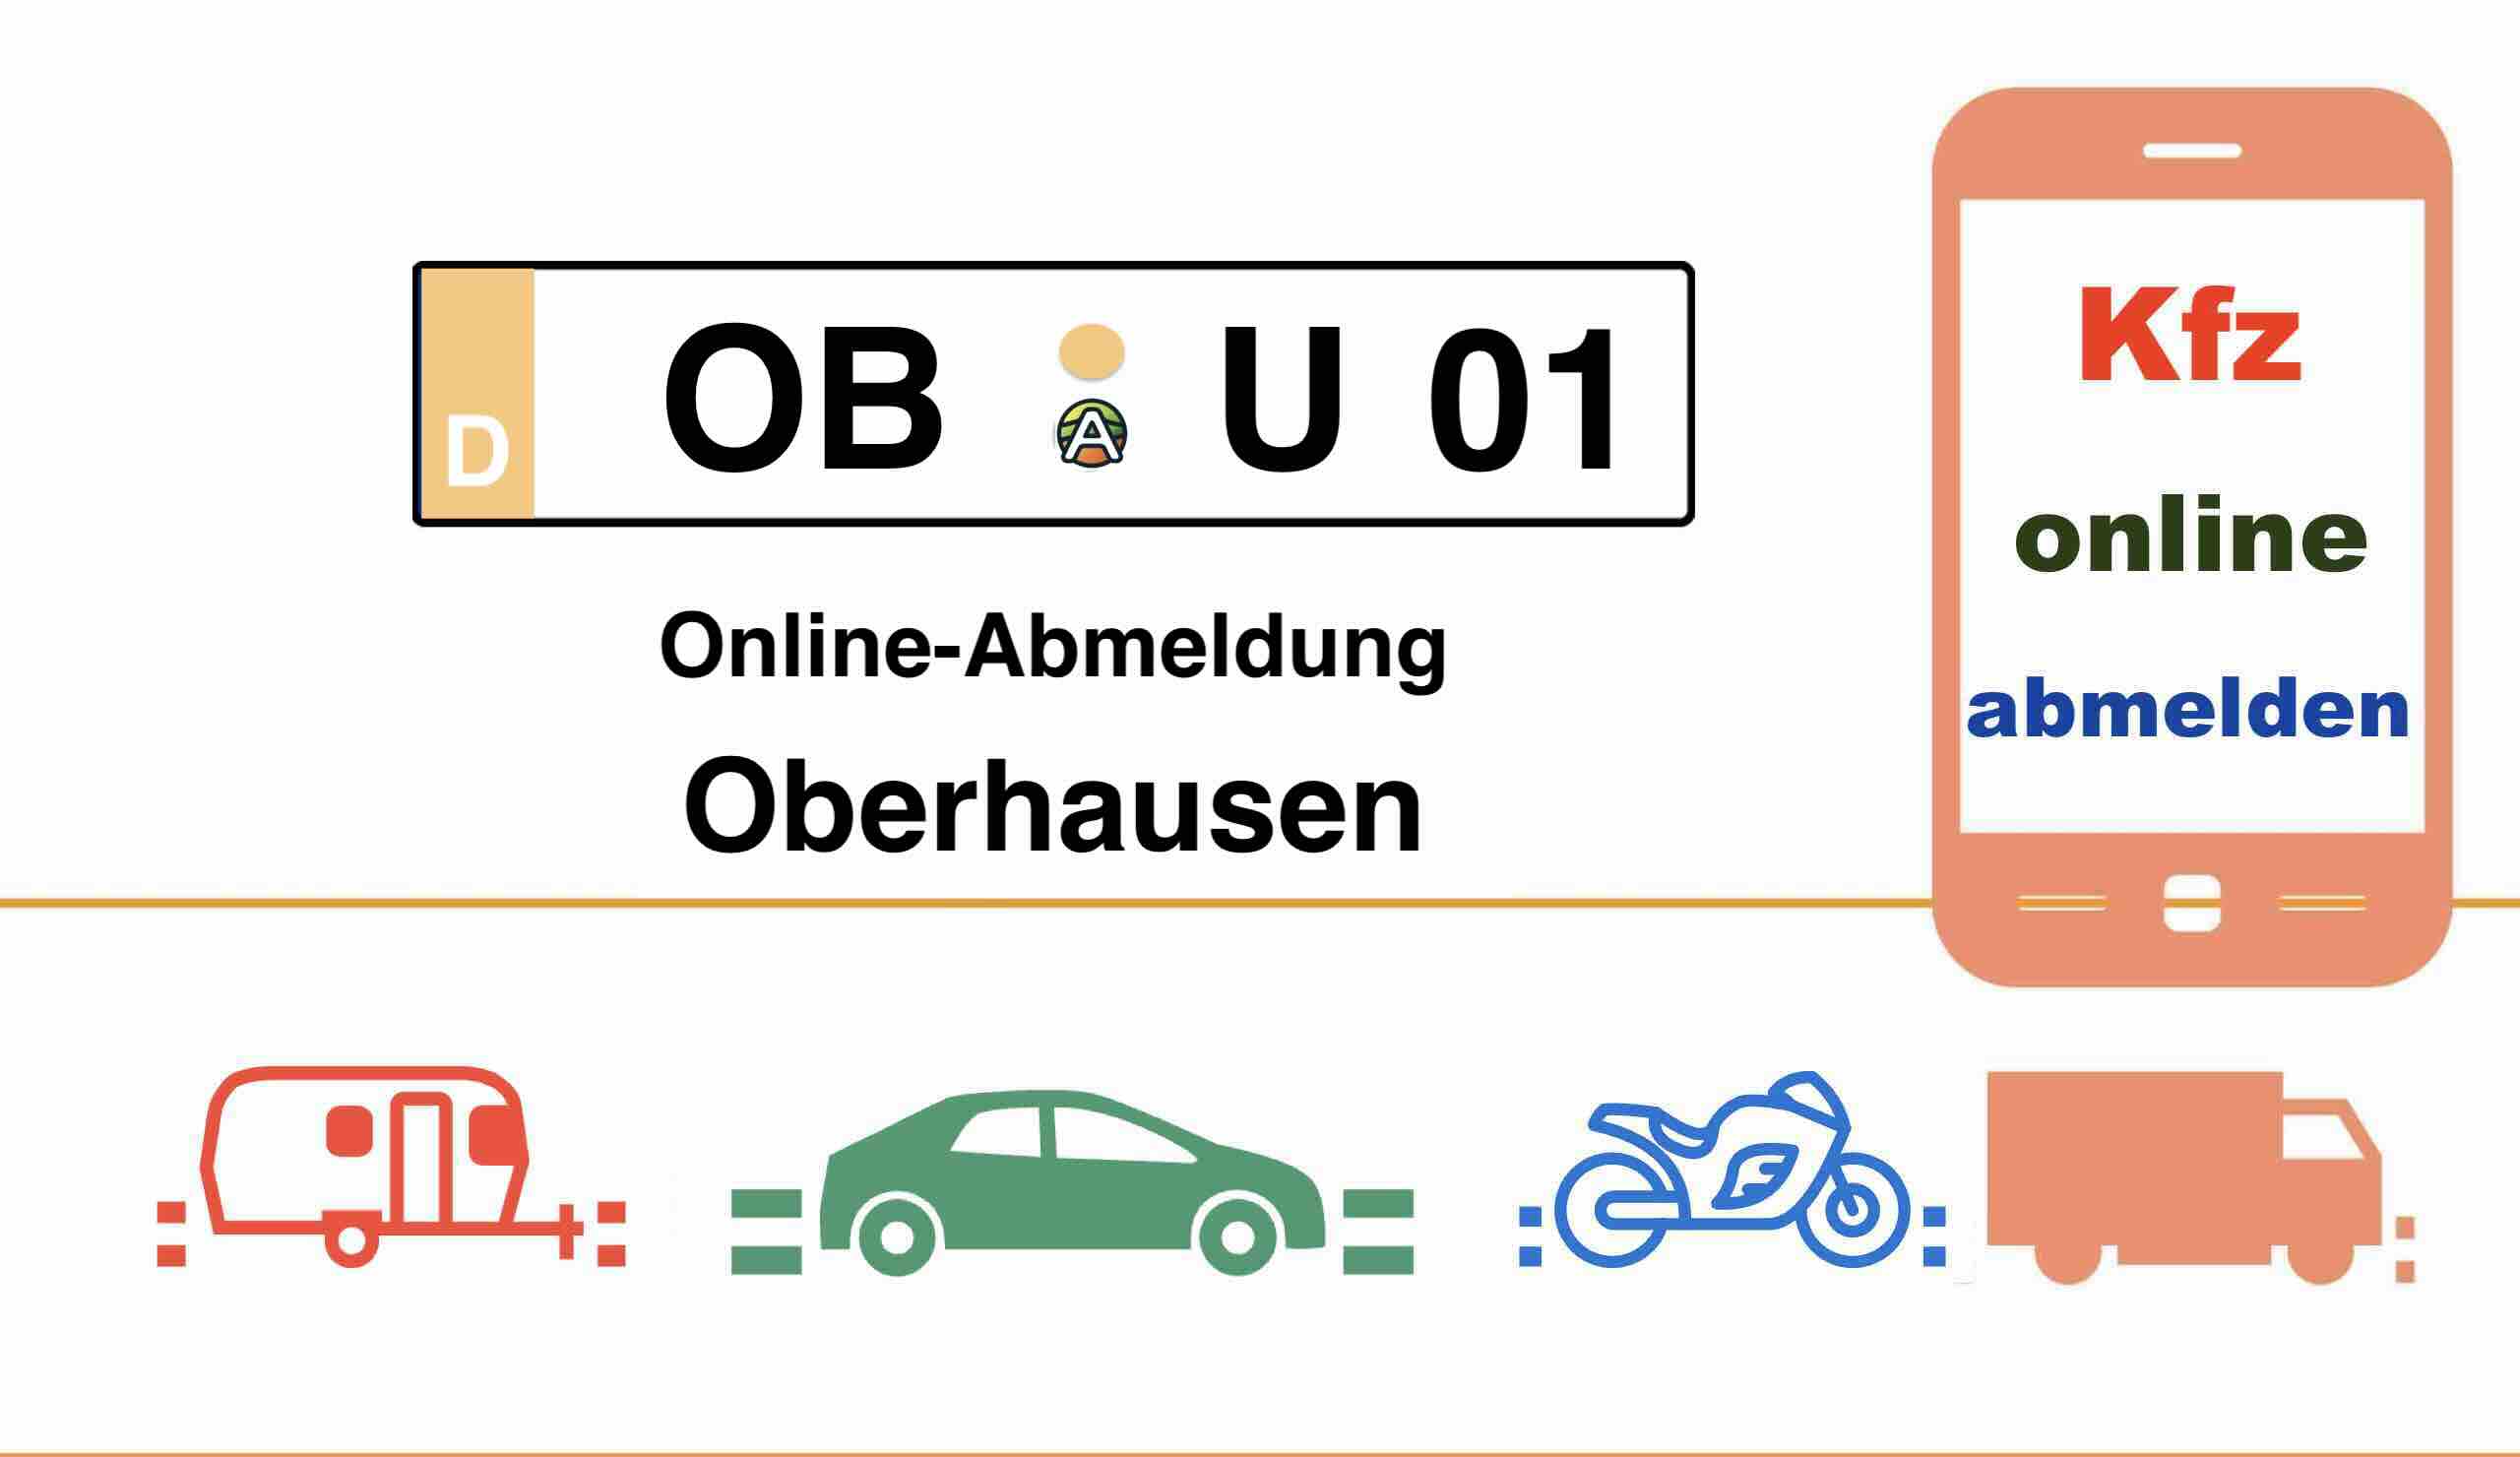 Online-Abmeldung in Oberhausen 